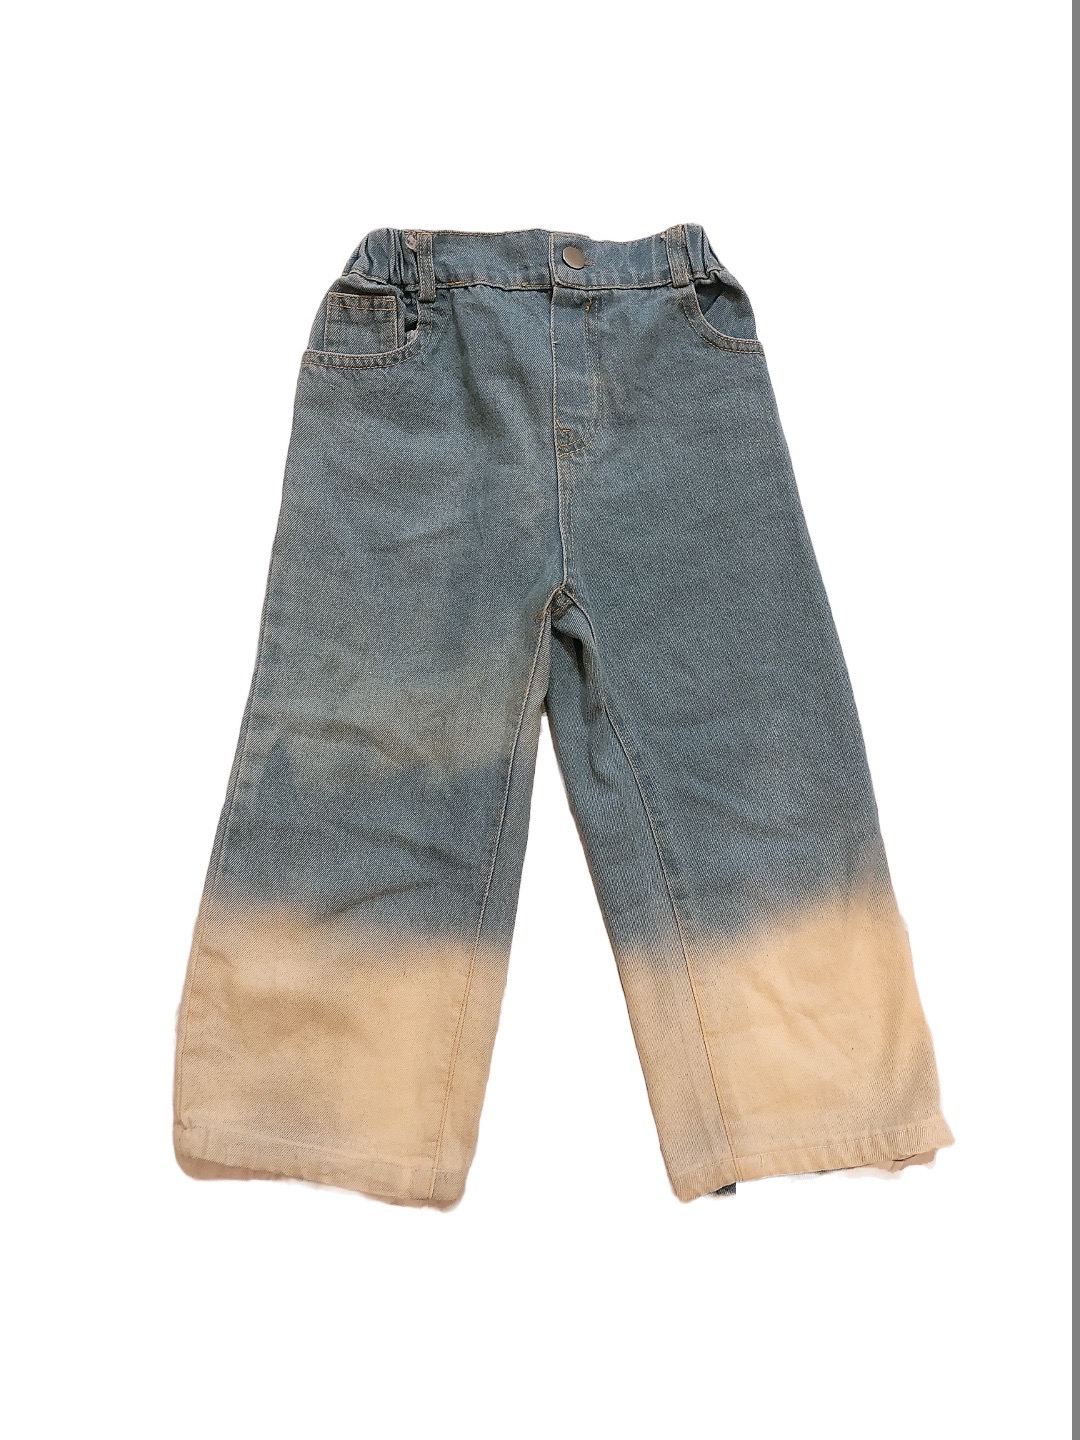 寬版直筒薄兒童牛仔褲(120cm)
NT$49